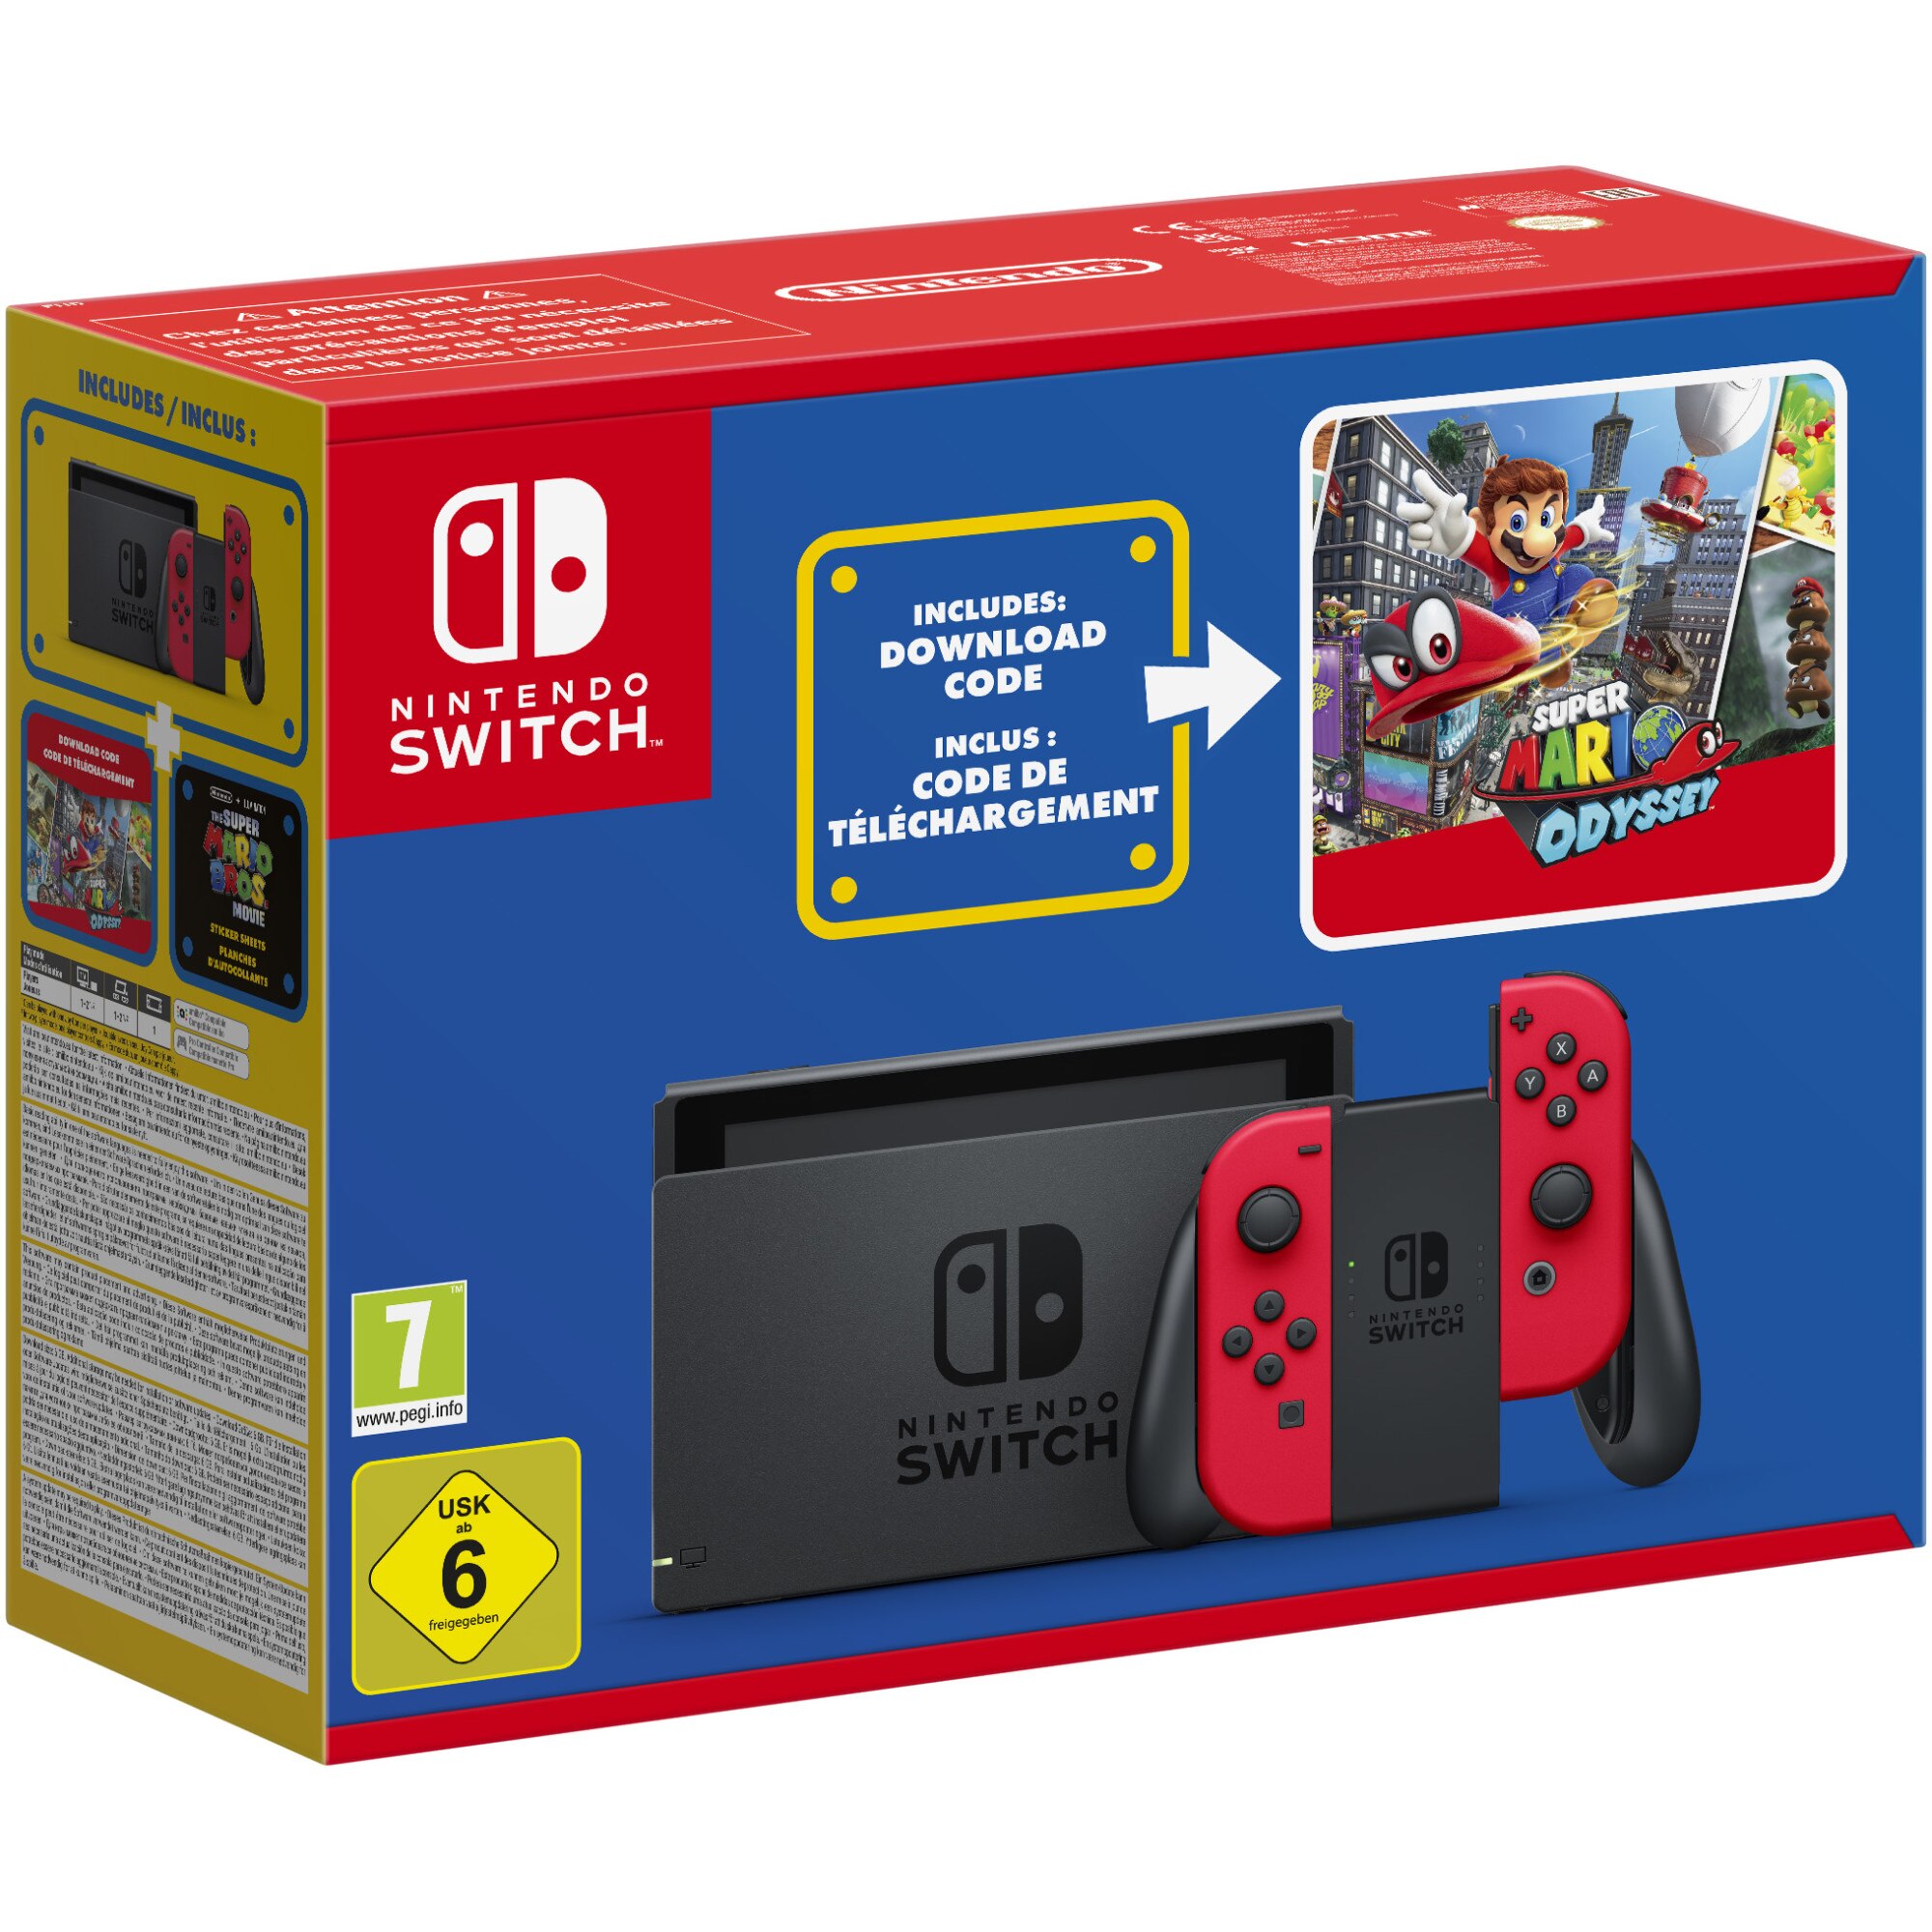 Fotografie Consola Nintendo Switch Mar10 Special Edition (cod Super Mario Odyssey inclus)”